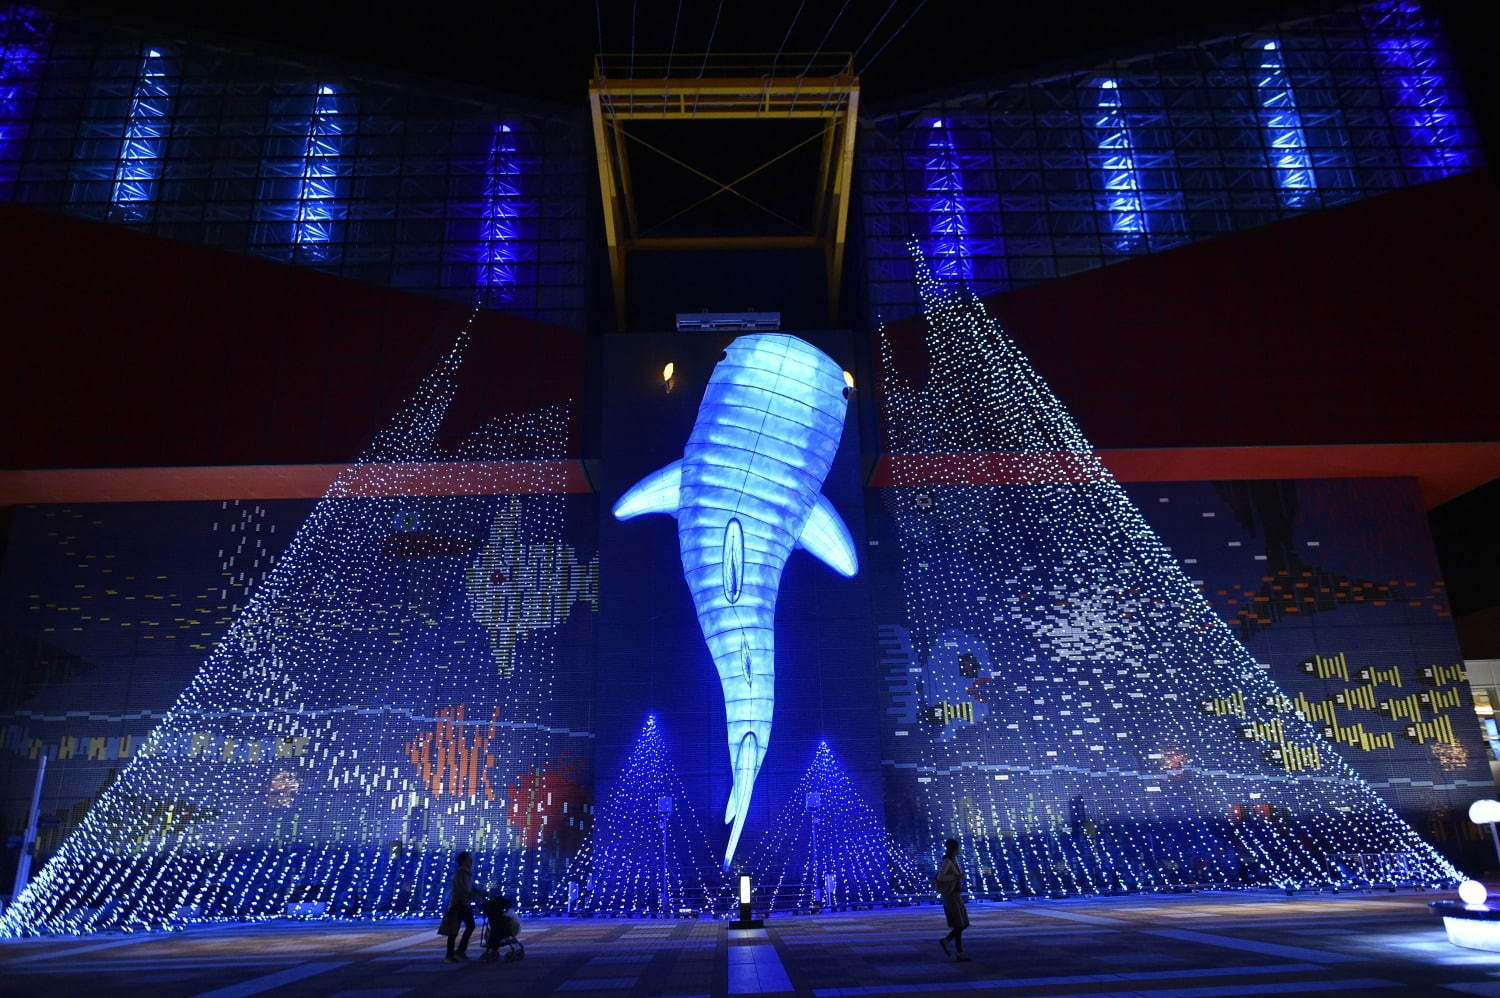 「海遊館」冬イルミネーション、約20メートルのジンベエザメ巨大オブジェが登場